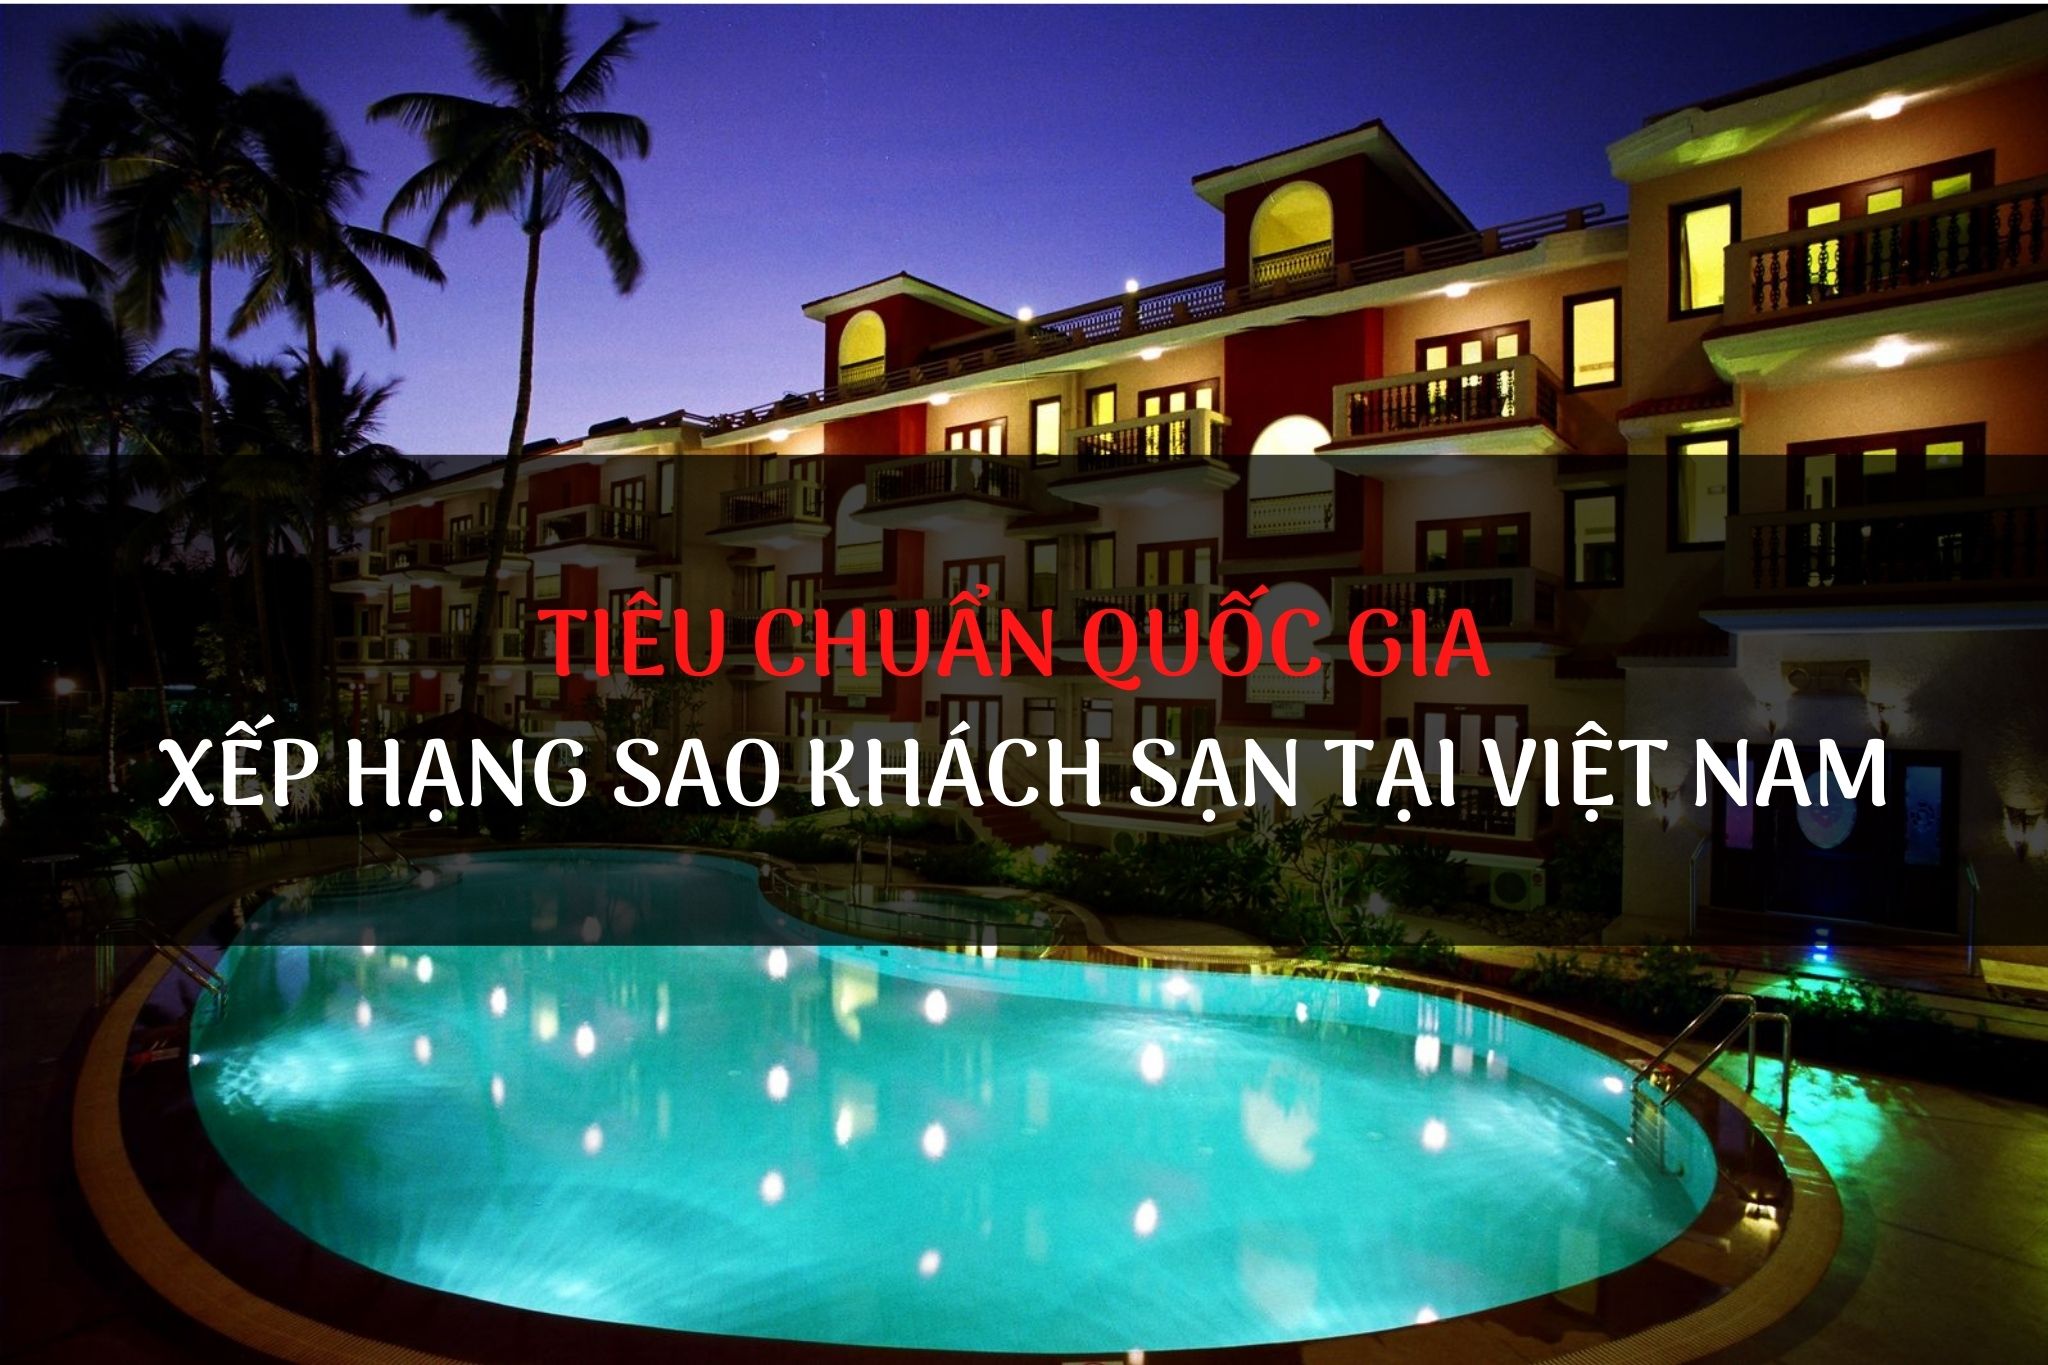 Tiêu chuẩn quốc gia về xếp hạng sao khách sạn tại Việt Nam